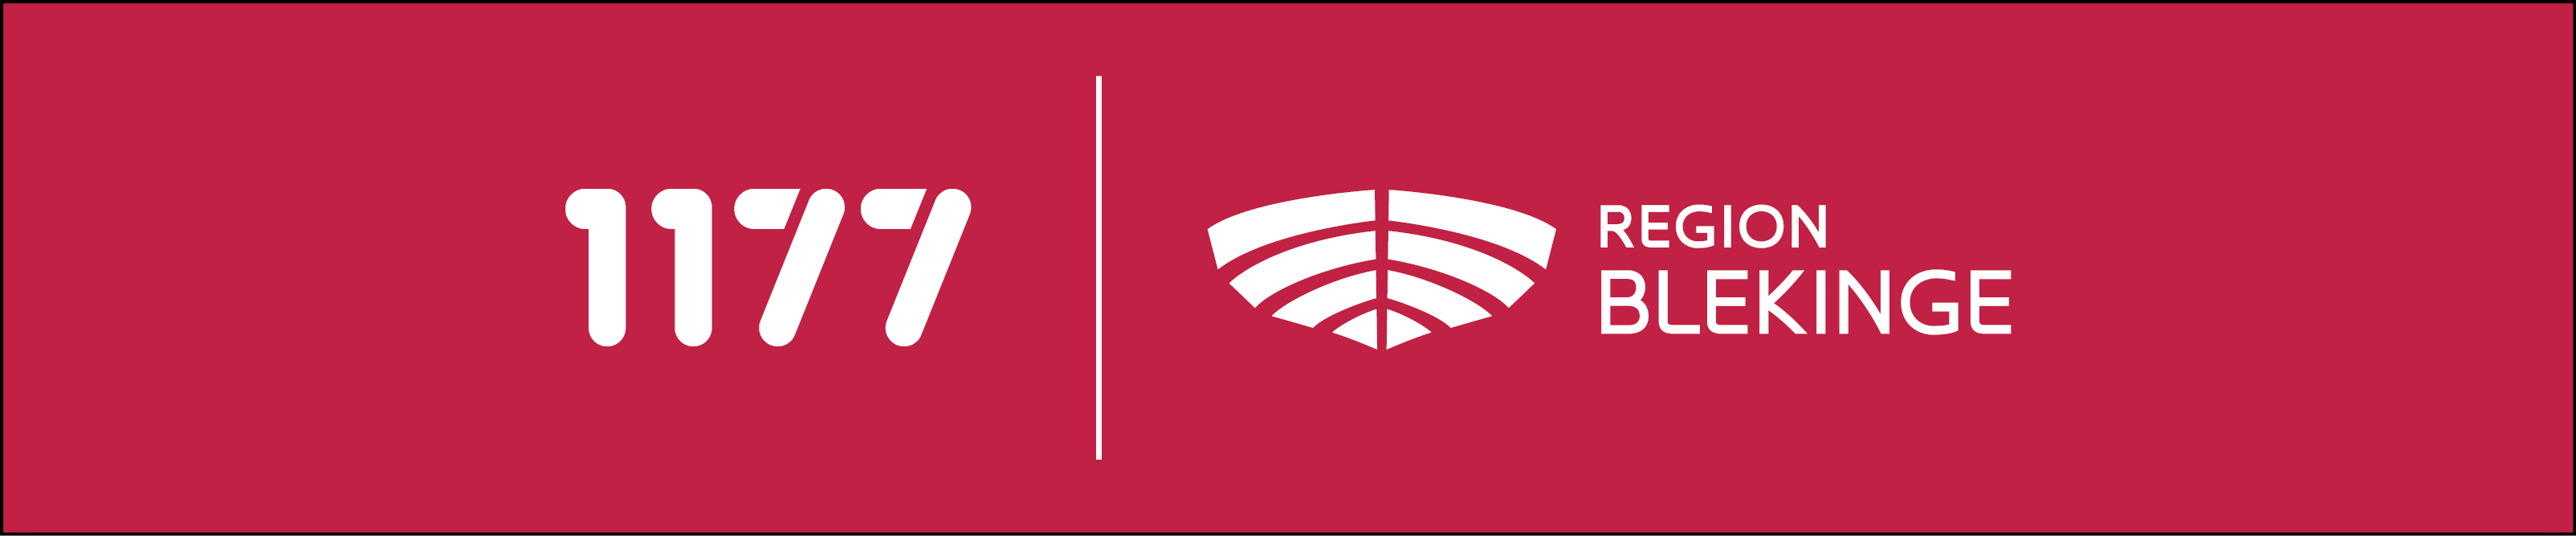 Röd banner med 1177:s och Region Blekinges vita logotyper.